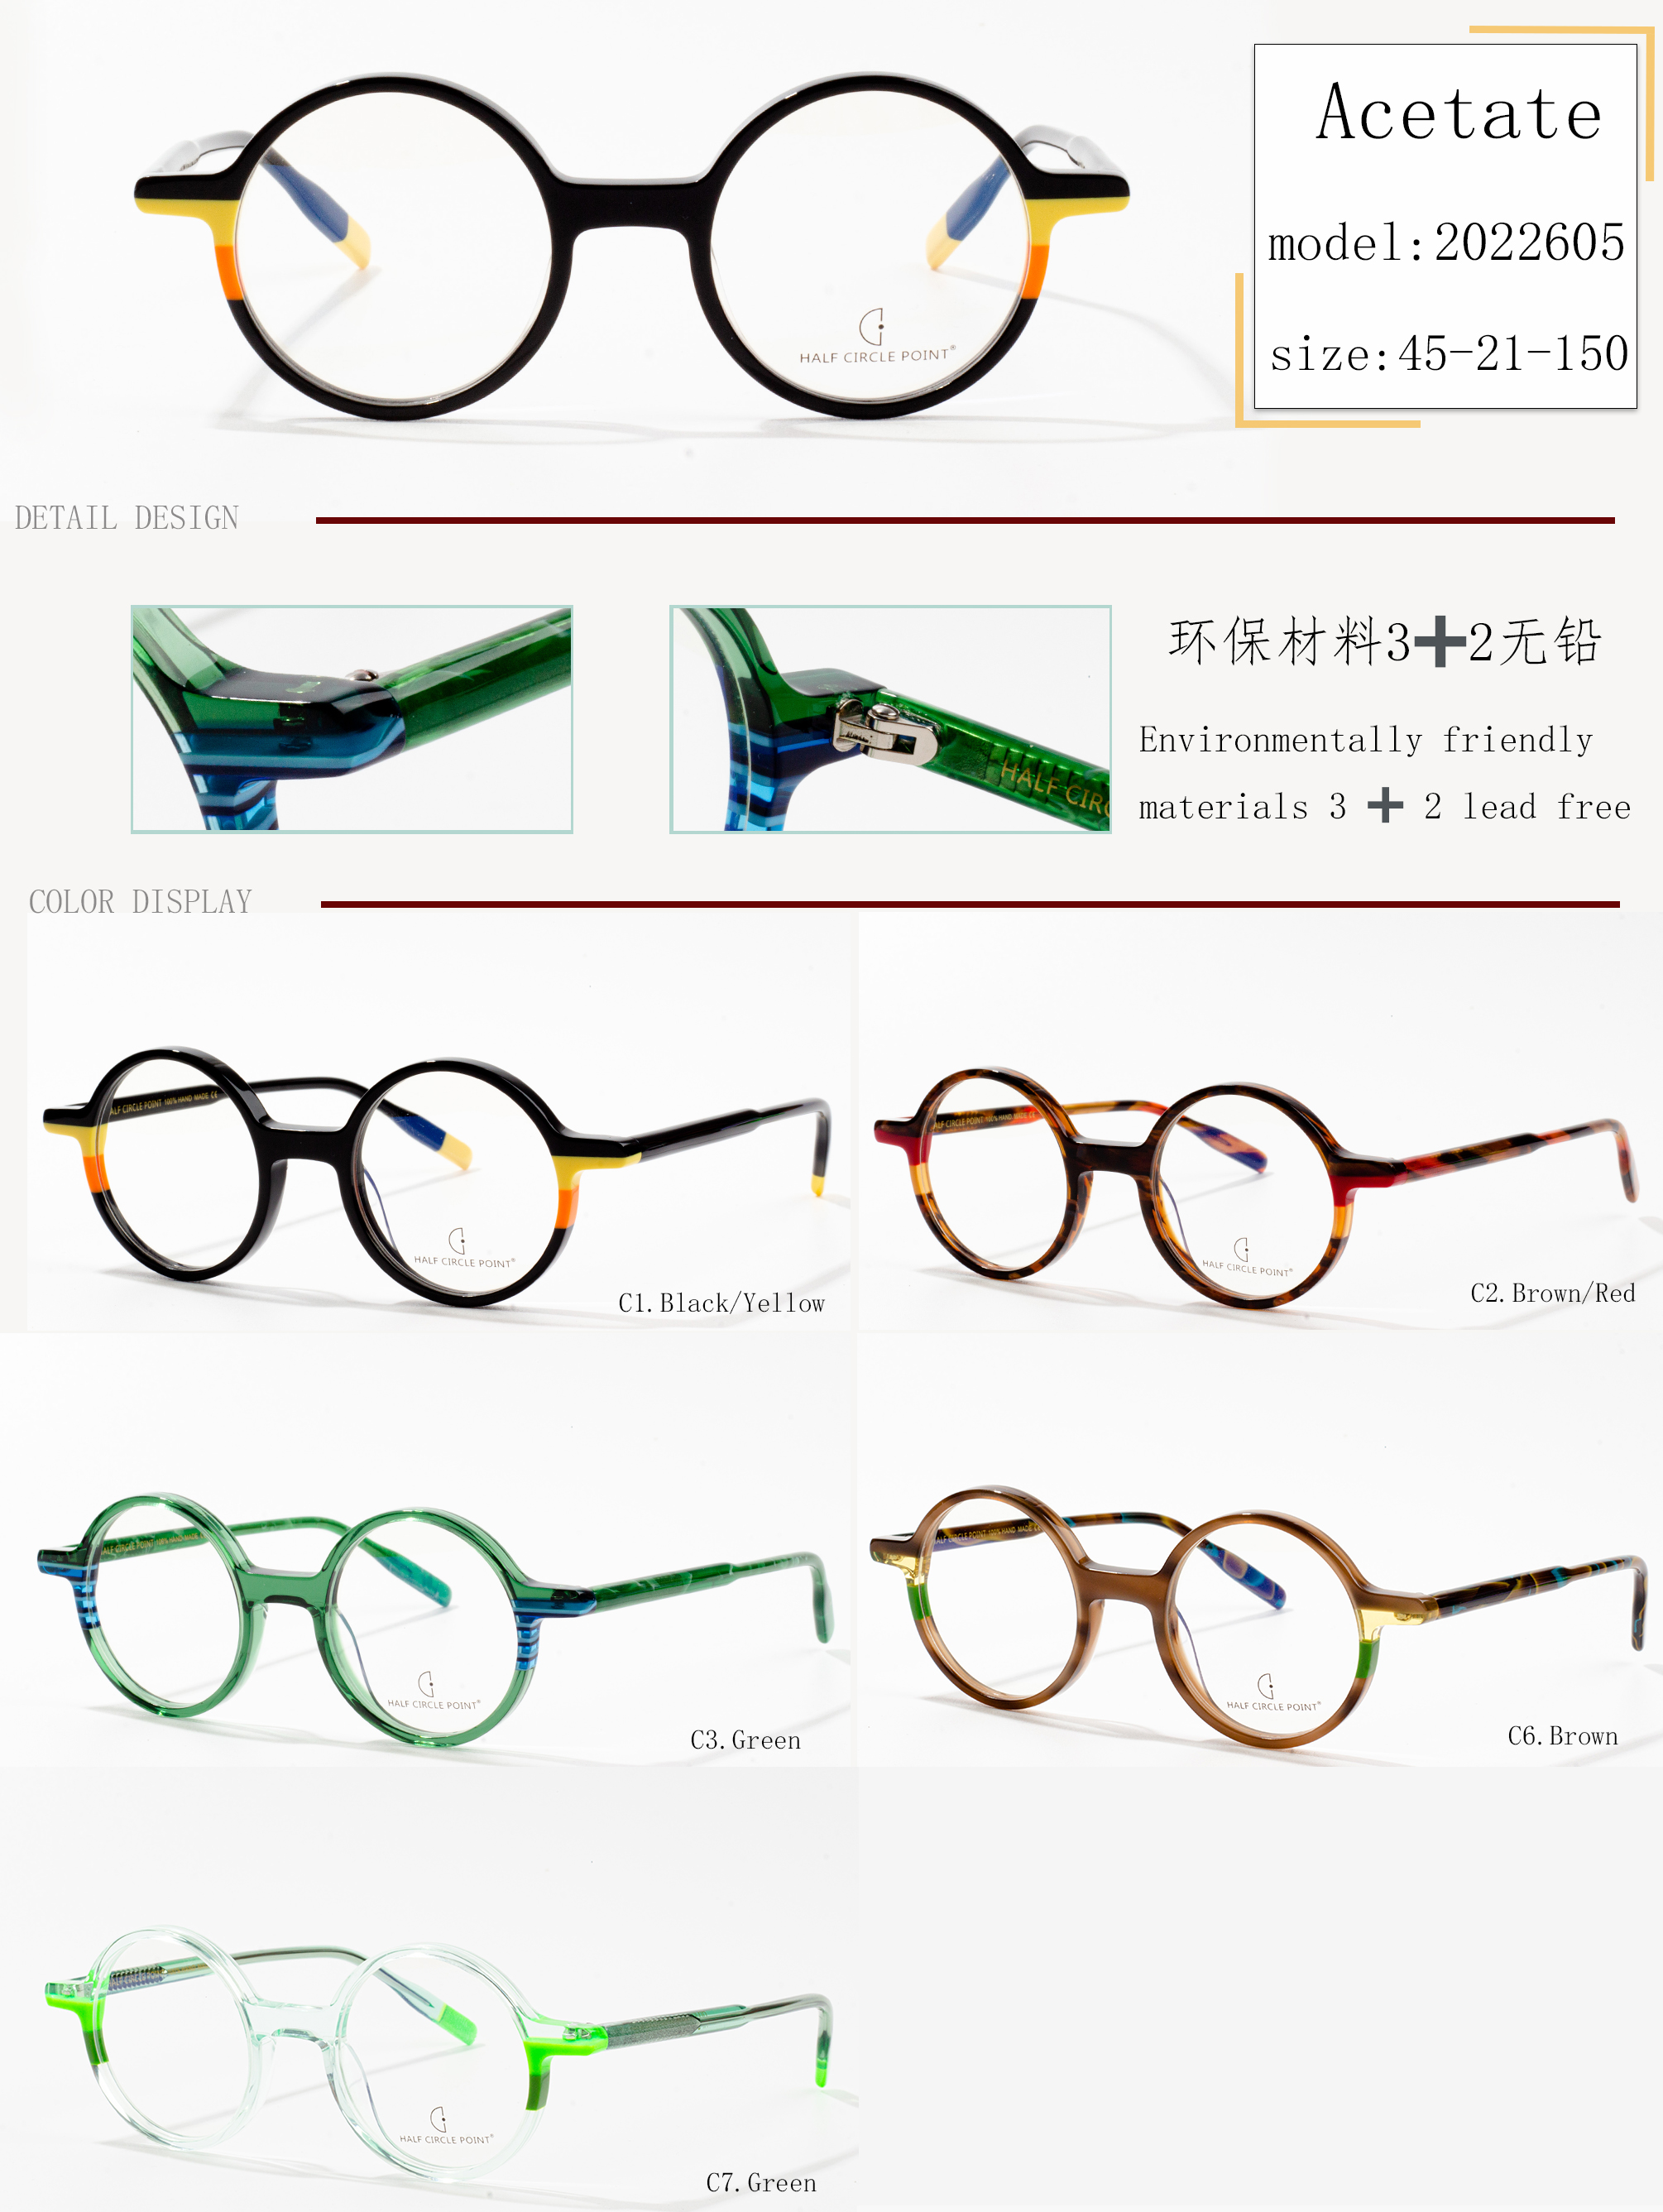 montures de lunettes design